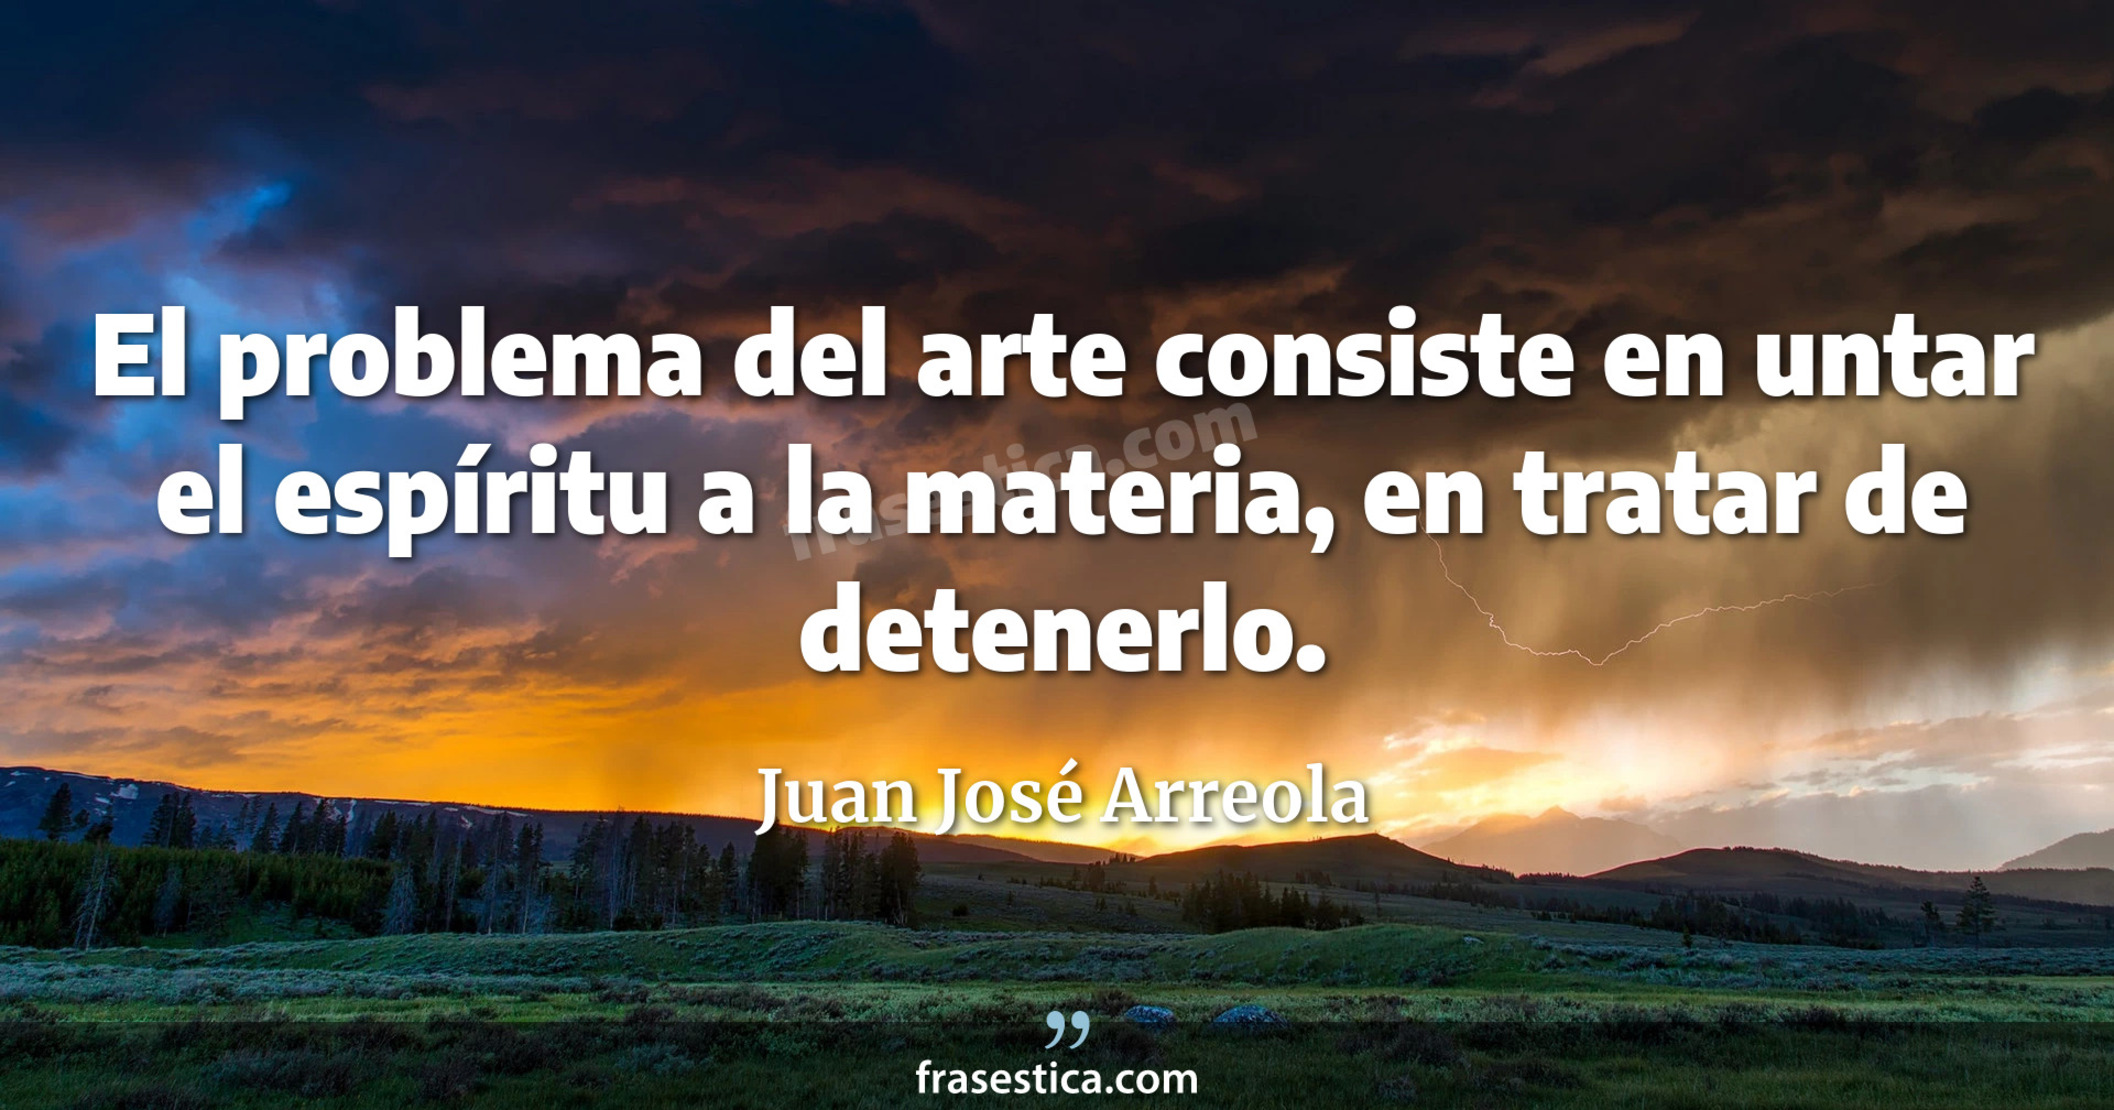 El problema del arte consiste en untar el espíritu a la materia, en tratar de detenerlo. - Juan José Arreola